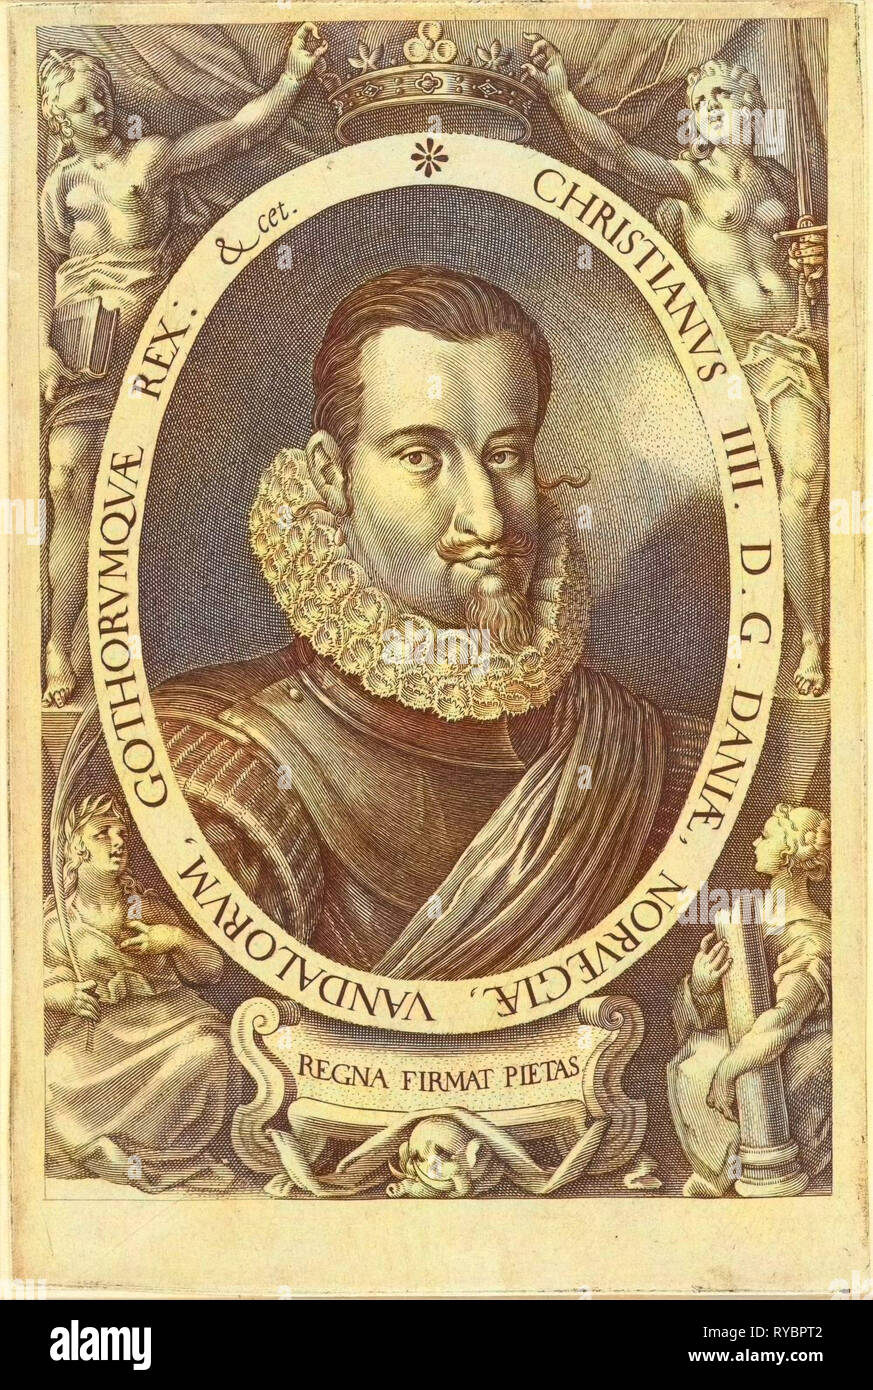 Portrait of King Christian IV of Denmark and Norway, Jan Harmensz. Muller, Remmert Petersen, 1604 - 1608 Stock Photo